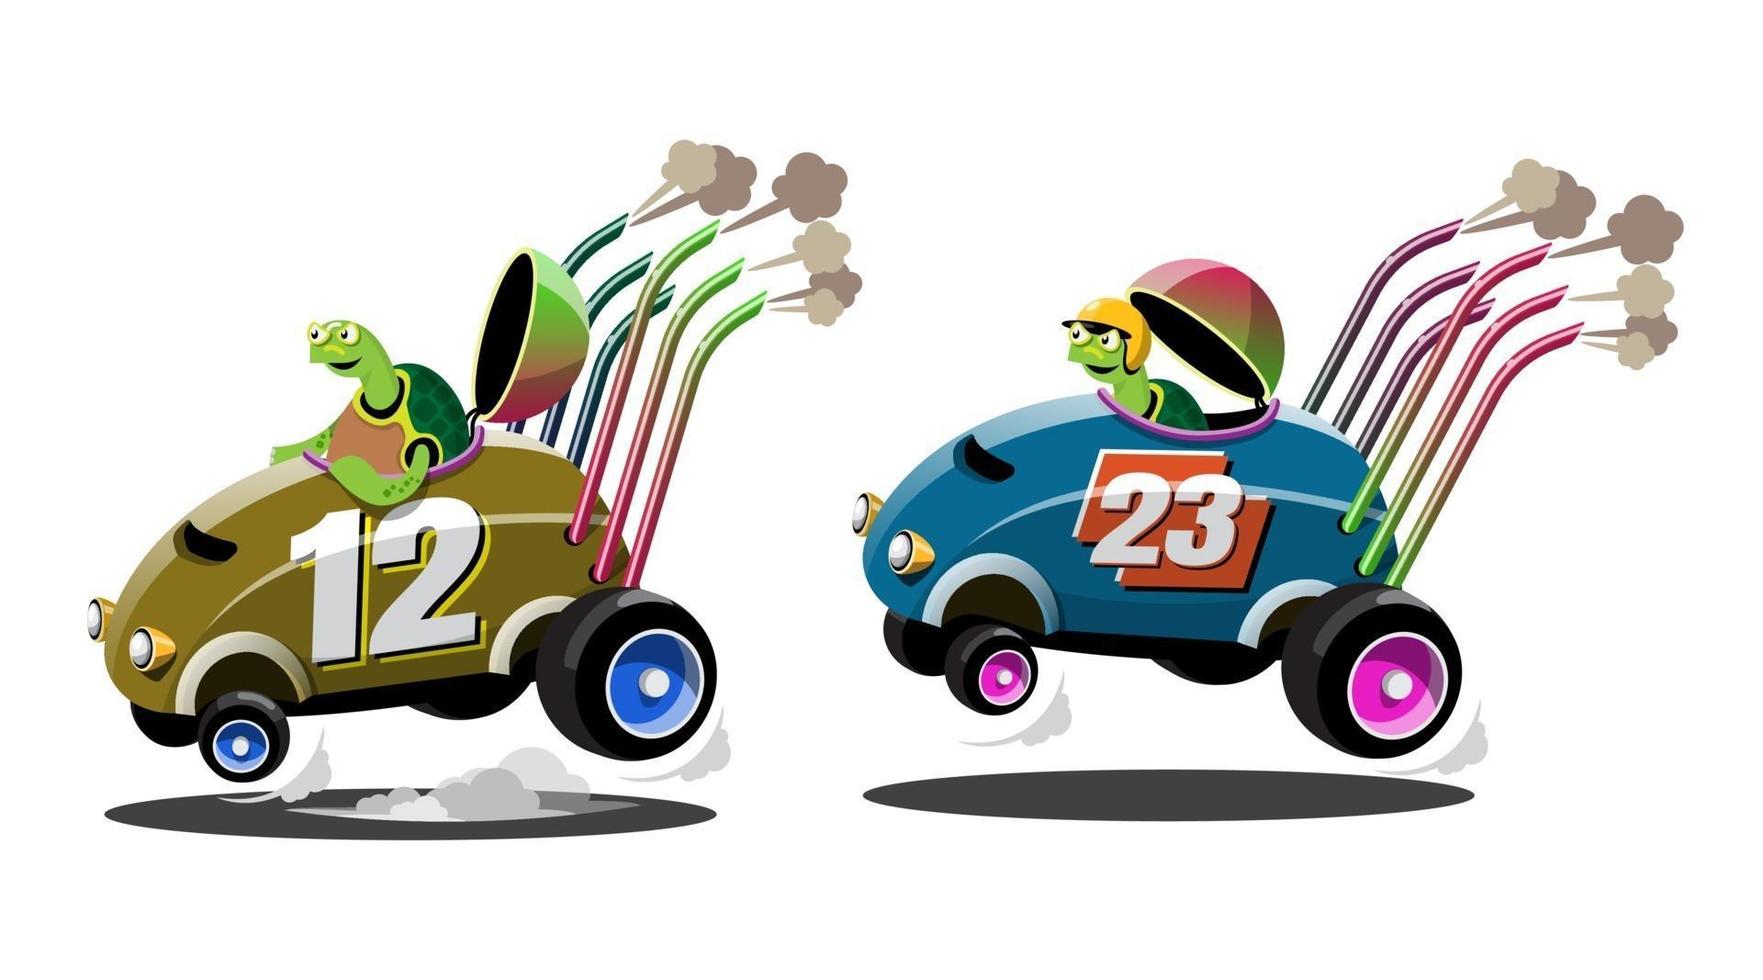 en la competición del juego, el jugador utilizó el coche de alta velocidad para ganar en el juego de carreras. competición e-sport car racing. vector